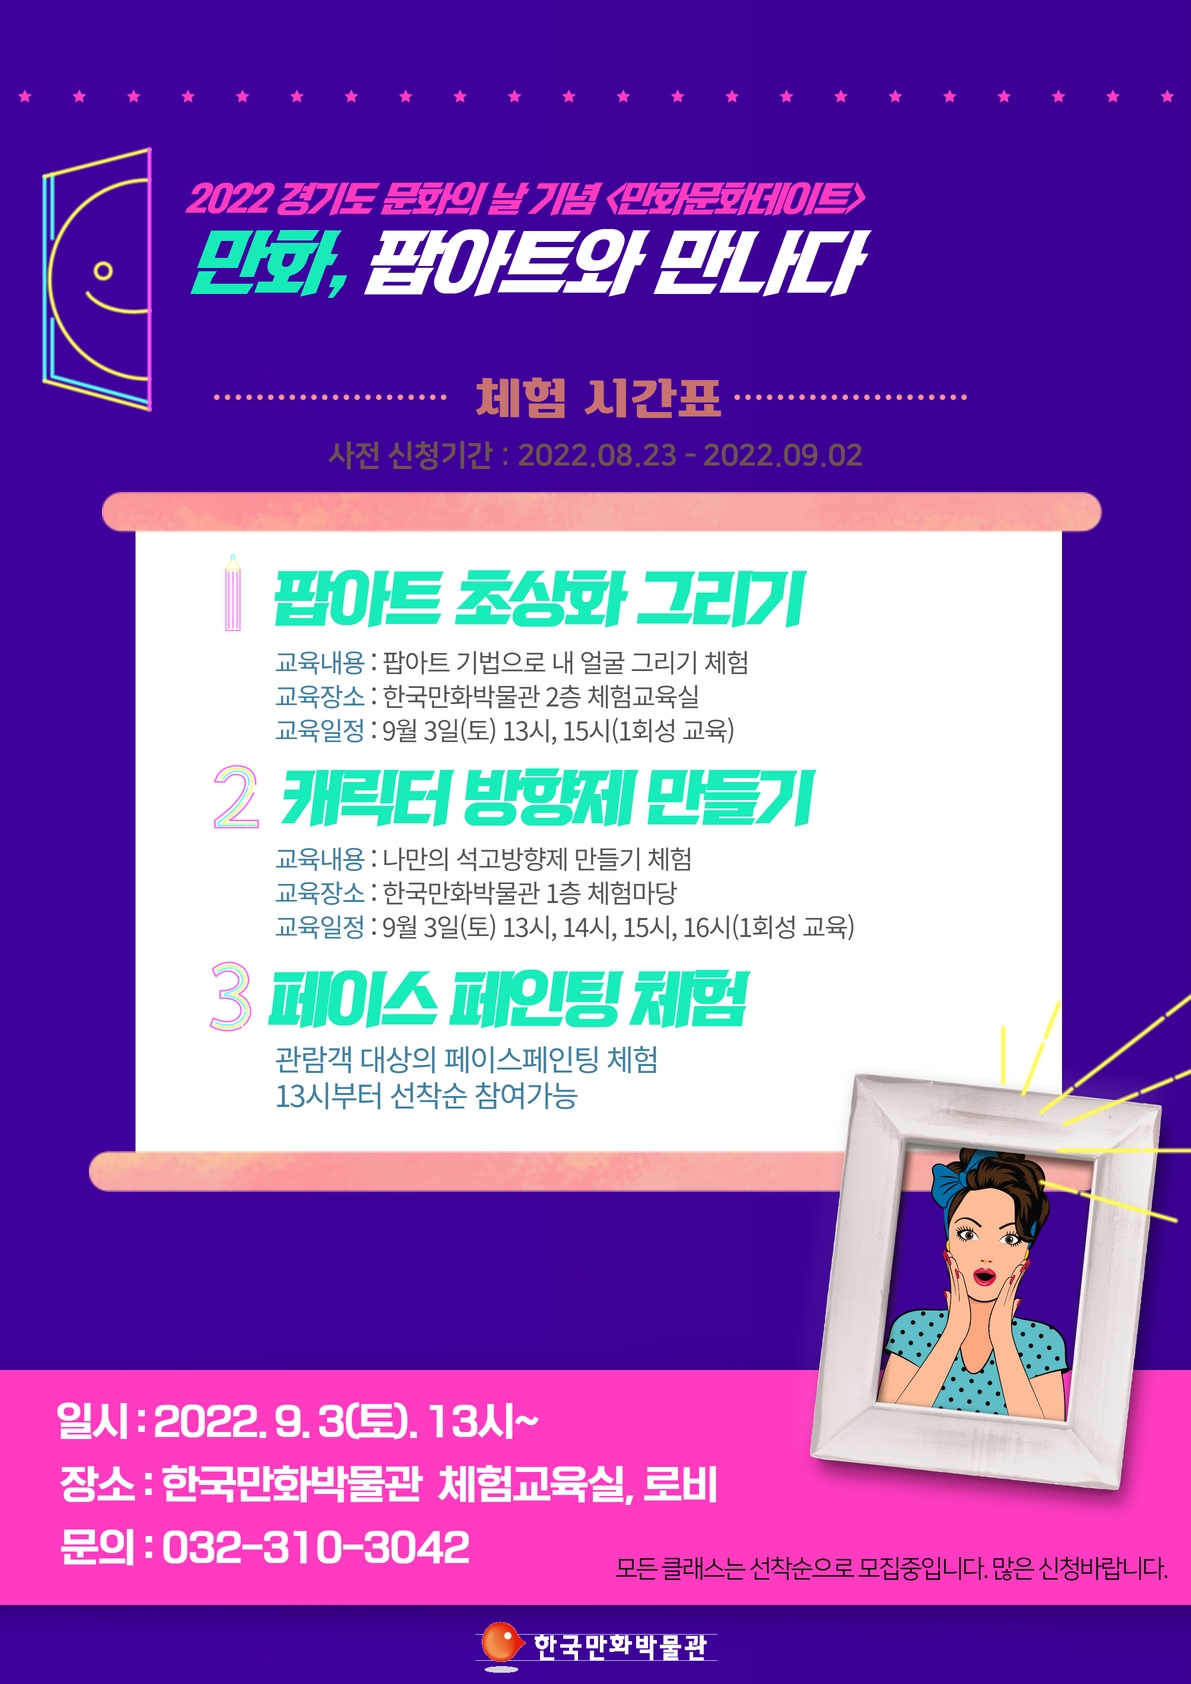 [종료] 팝아트 체험 행사 개최(9/3(토)), 2022 경기도 문화의 날 기념 행사